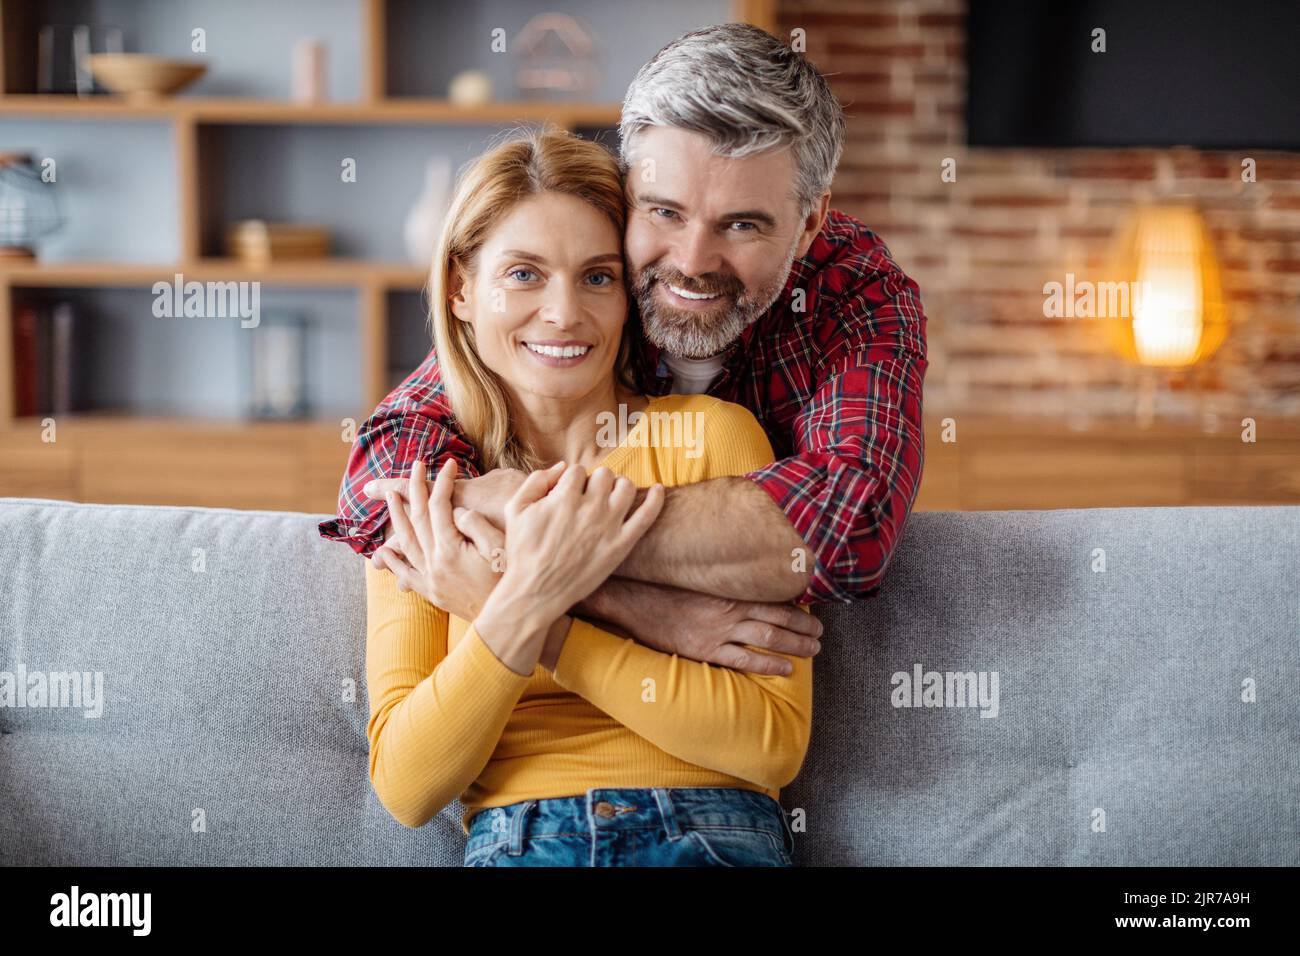 Allegro uomo caucasico adulto che abbraccia la donna, godendo tenero momento, guardando la macchina fotografica nel tempo libero Foto Stock